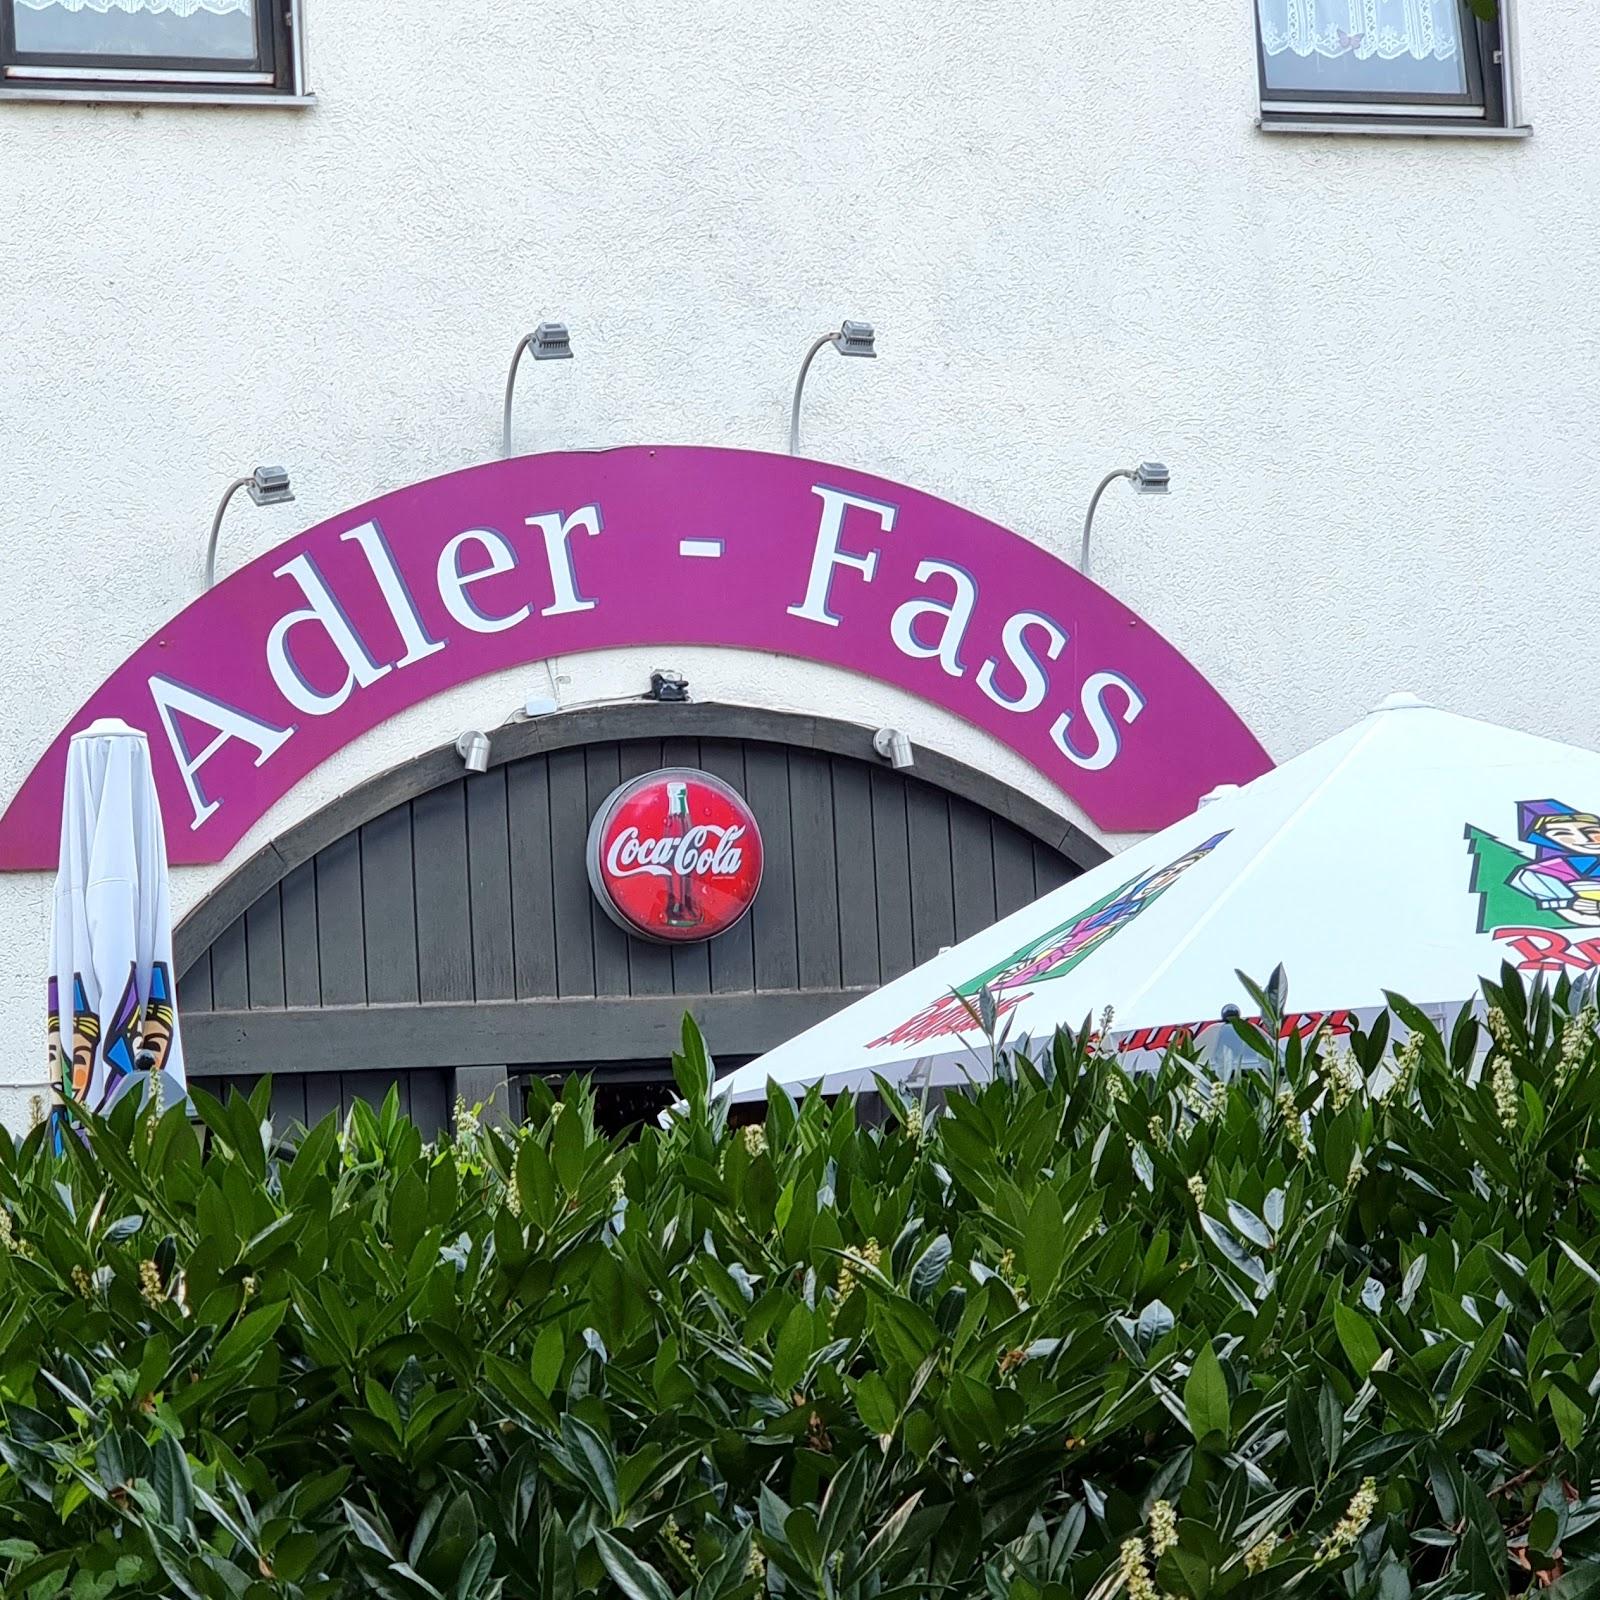 Restaurant "Adlerfass" in Lörrach